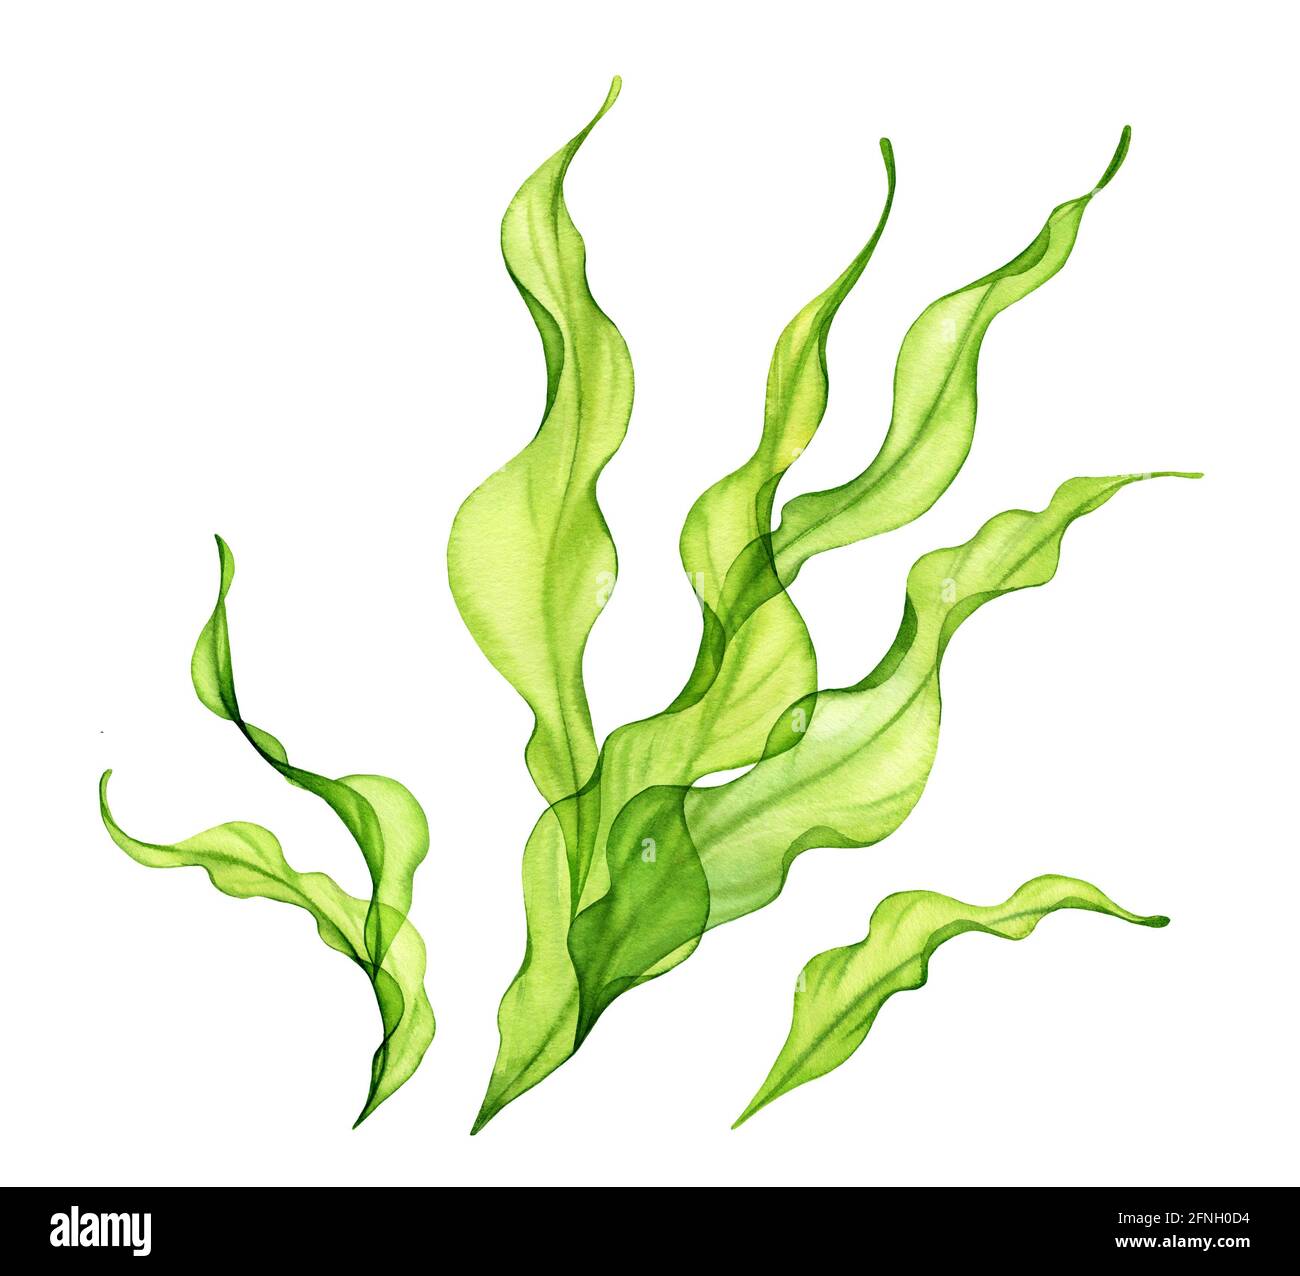 Macchia di alghe acquatiche. Trasparente pianta di mare verde isolata su bianco. Collezione di illustrazioni botaniche realistiche. Erba subacquea dipinta a mano Foto Stock